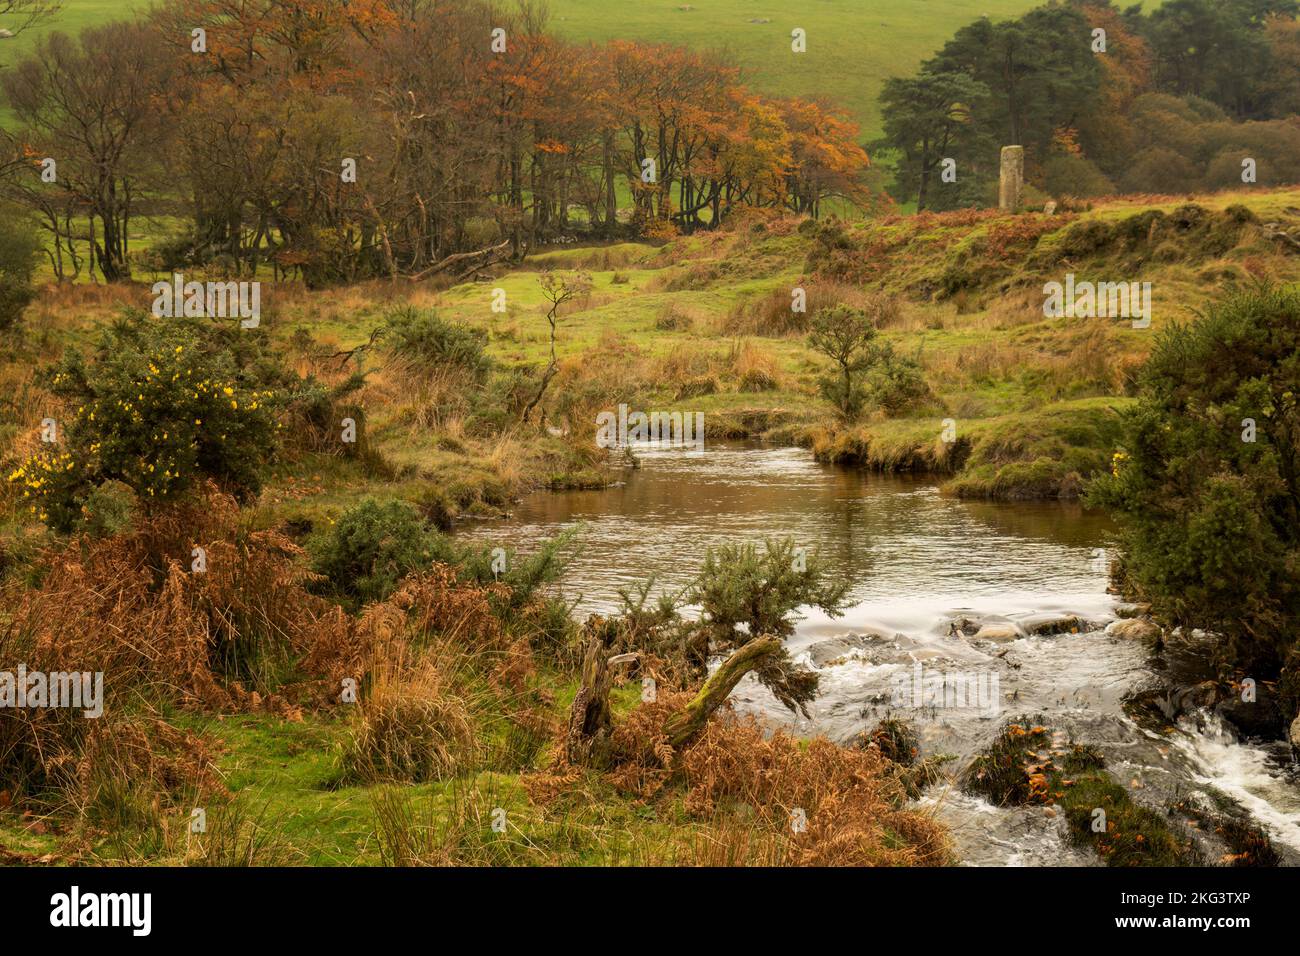 Dettaglio della valle nel Parco Nazionale di Dartmoor, Devon, Inghilterra. Novembre. Foto Stock